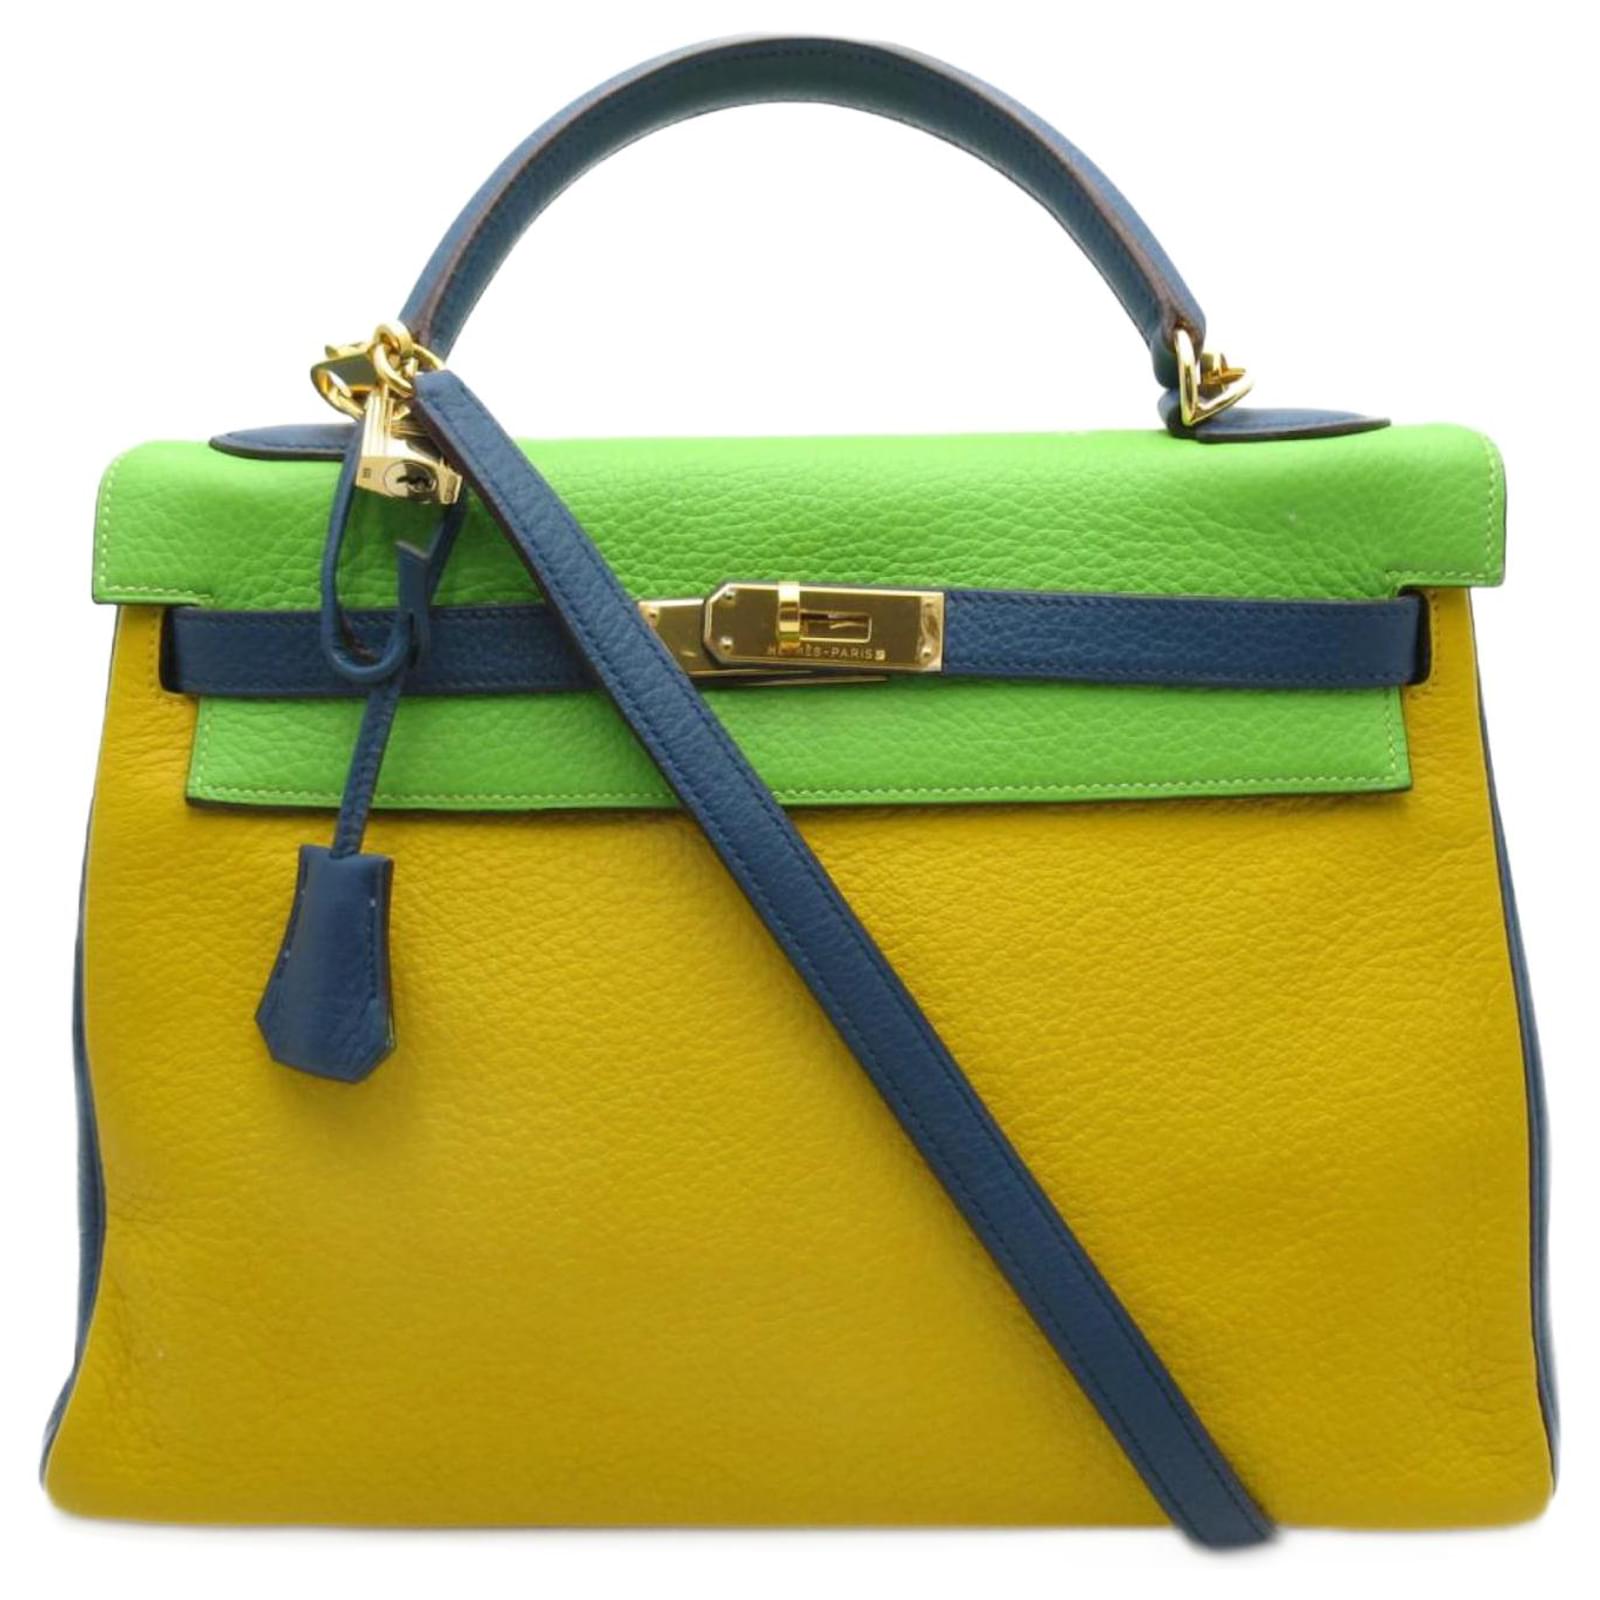 Hermes Kelly 32 Tri-Color Bag